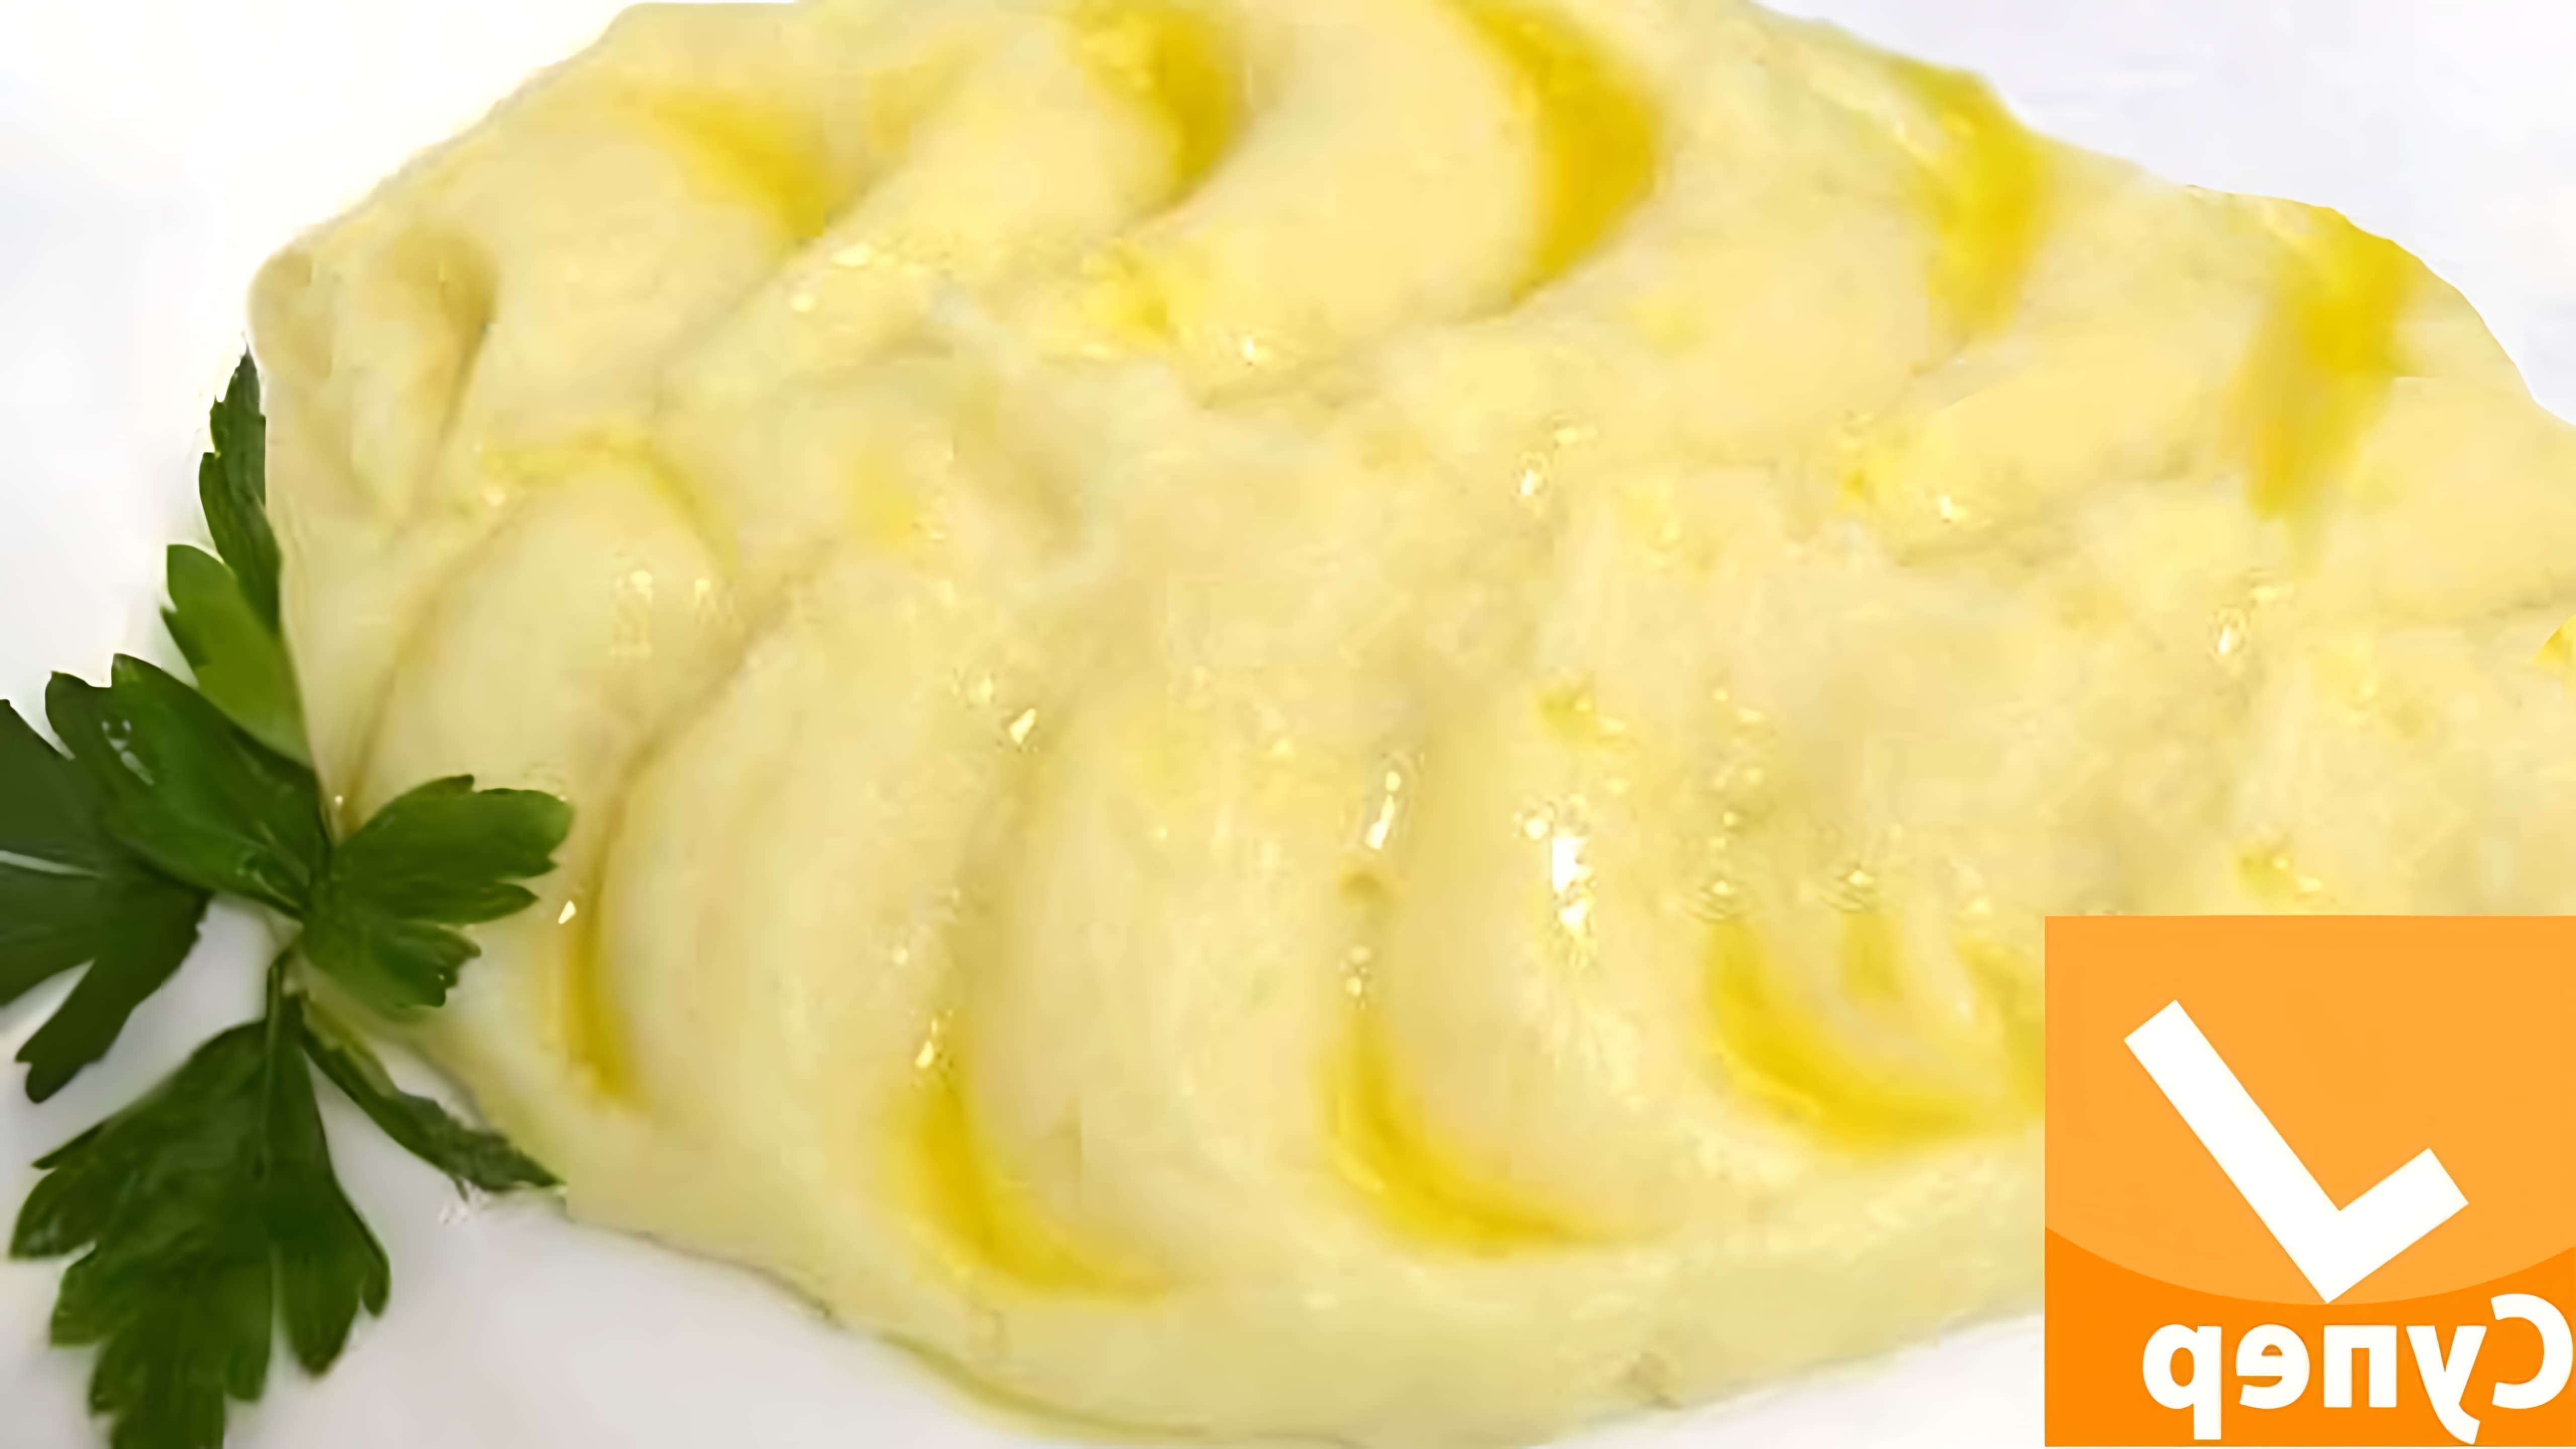 В этом видео демонстрируется рецепт приготовления картофельного пюре с молоком и маслом